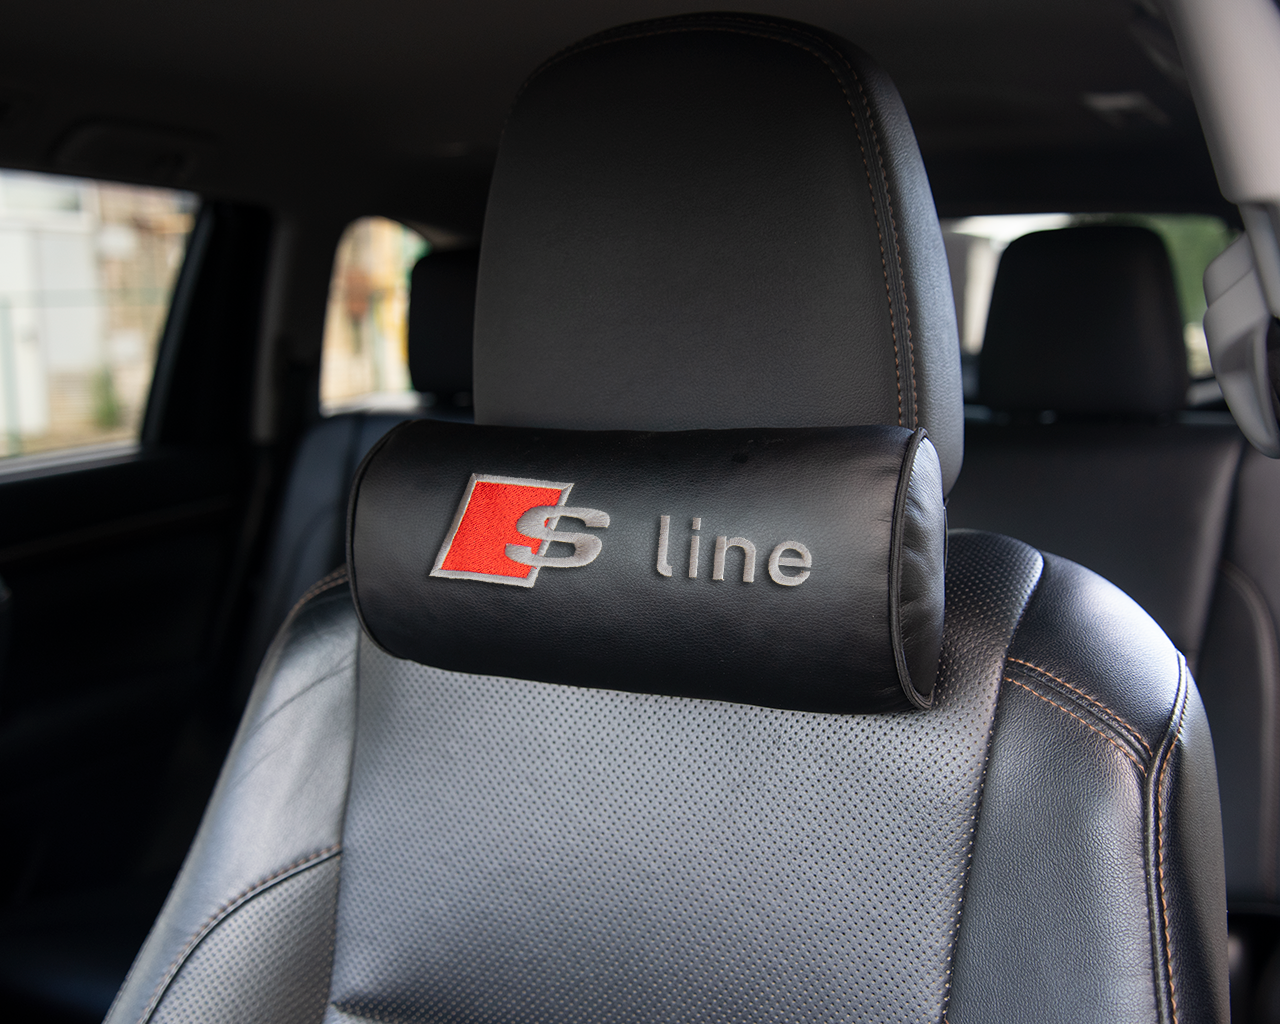 Автомобильная подушка-валик на подголовник экокожа Black c вышивкой AUDI S Line